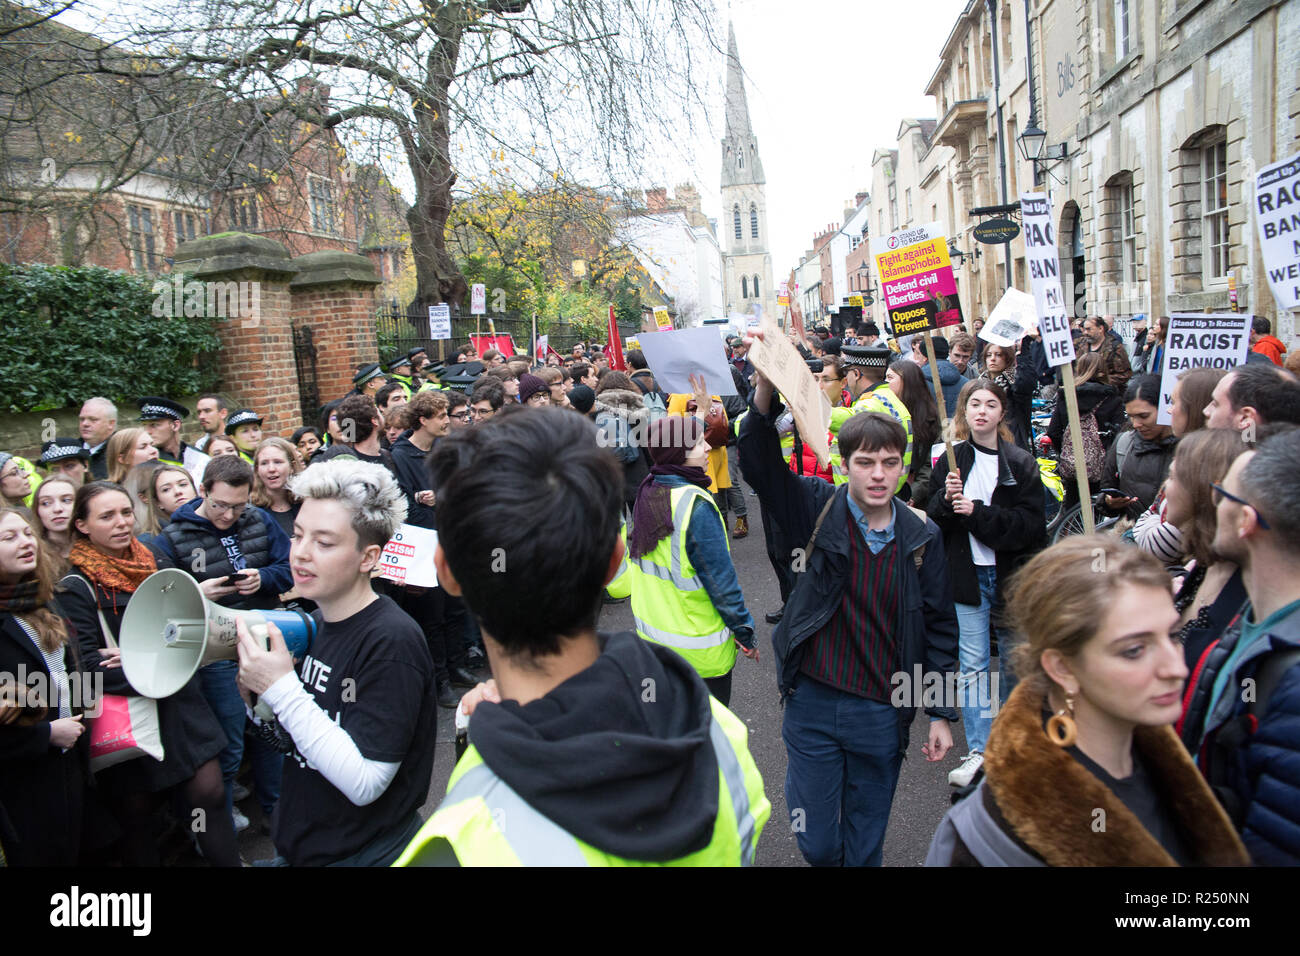 Oxford, Großbritannien, 16. November 2018. Die Oxford Union protestieren. Steve Bannon Credit: Pete Lusabia/Alamy leben Nachrichten Stockfoto